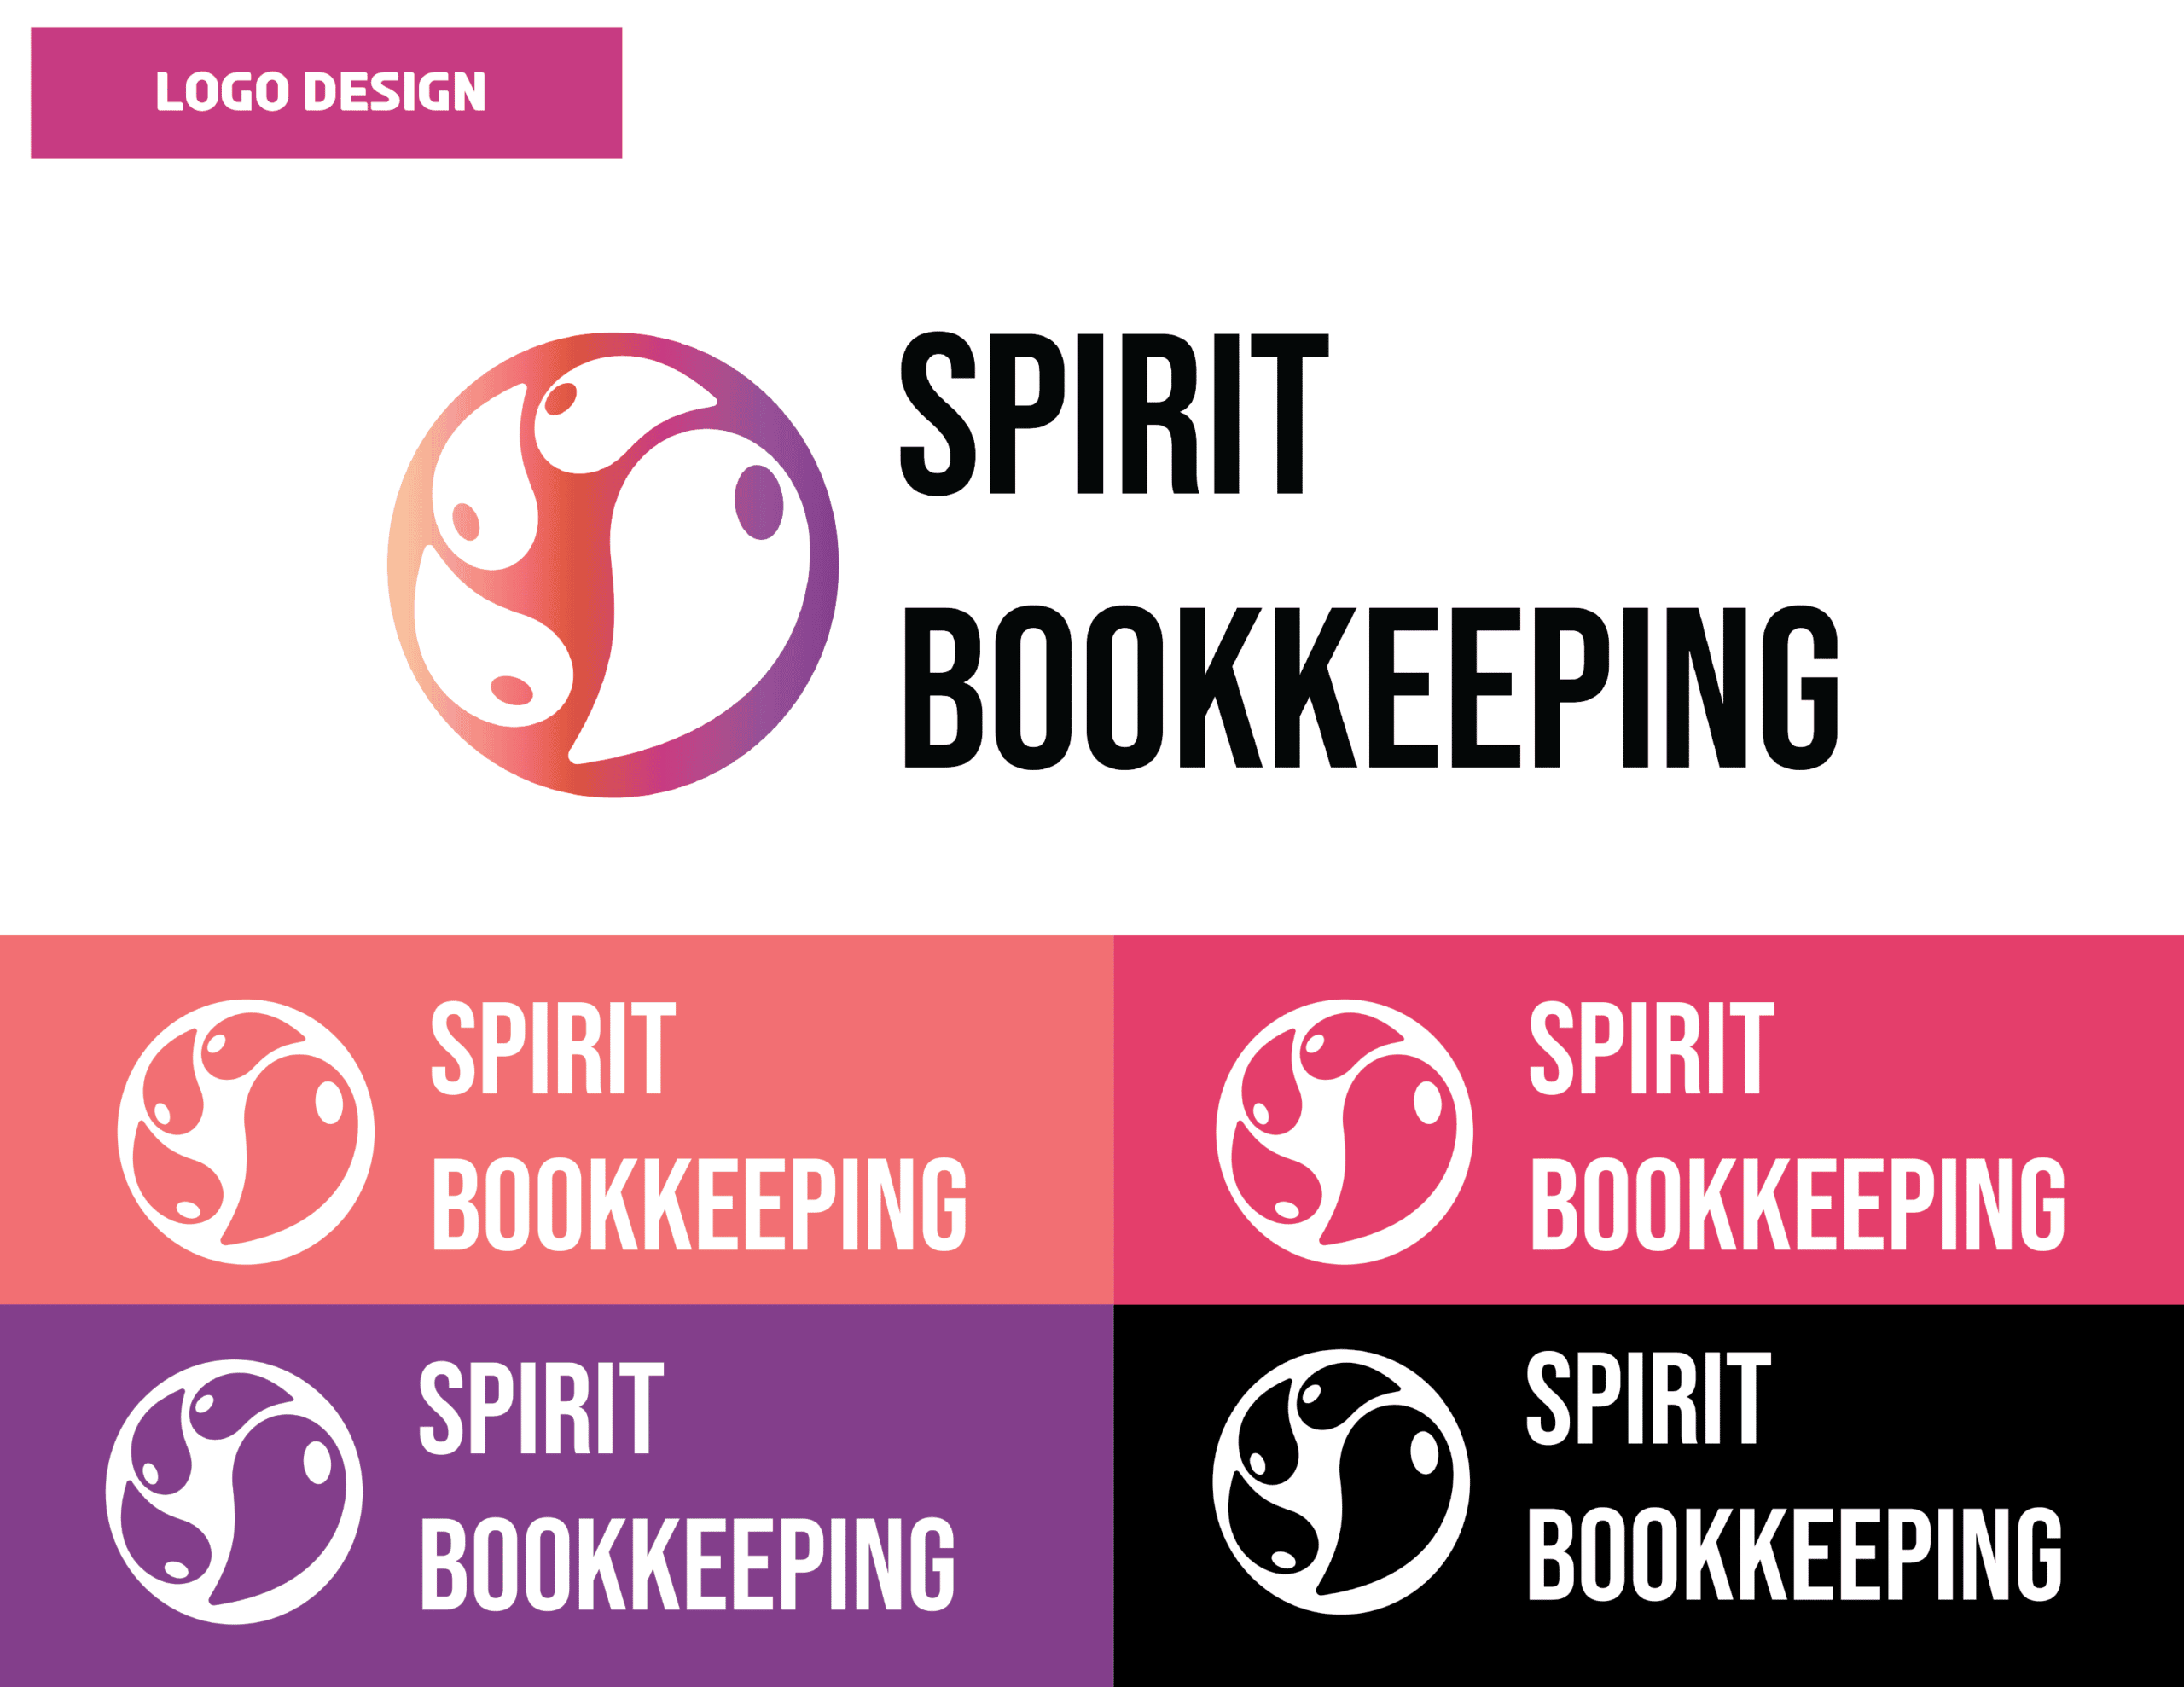 01_SpiritBookkeeping_Logo Design